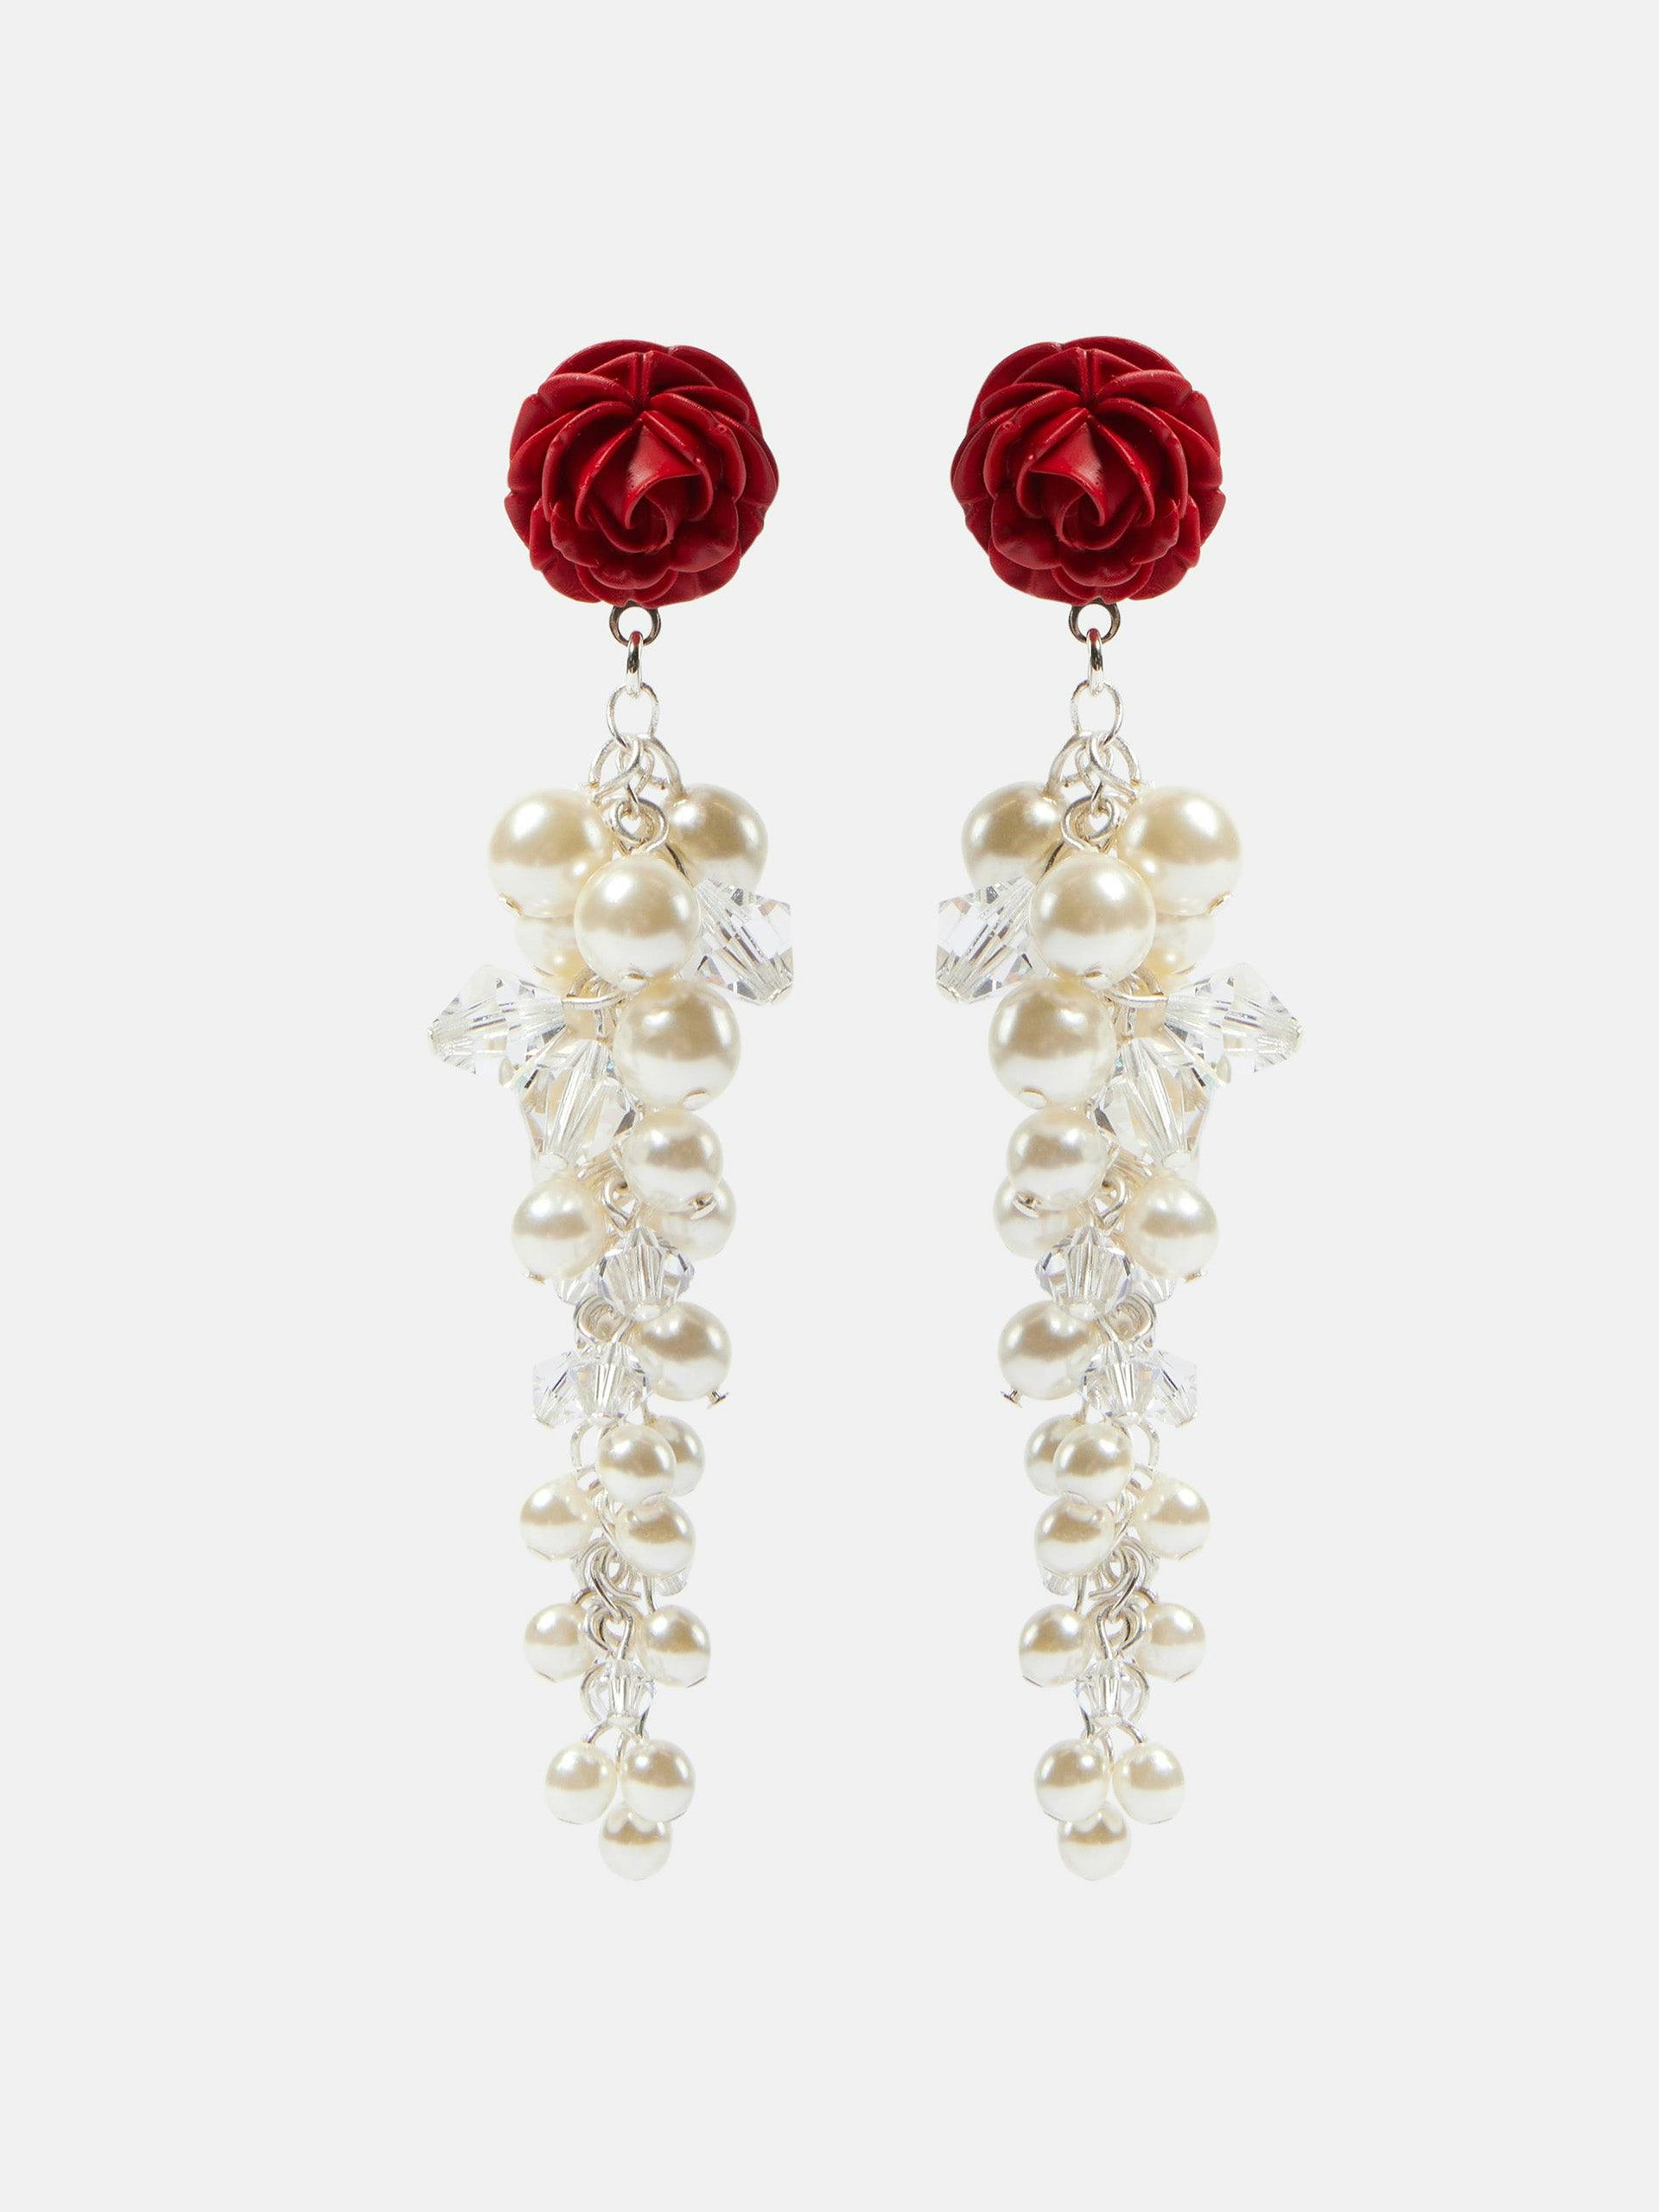 Rosedrop embellished sterling silver drop earrings